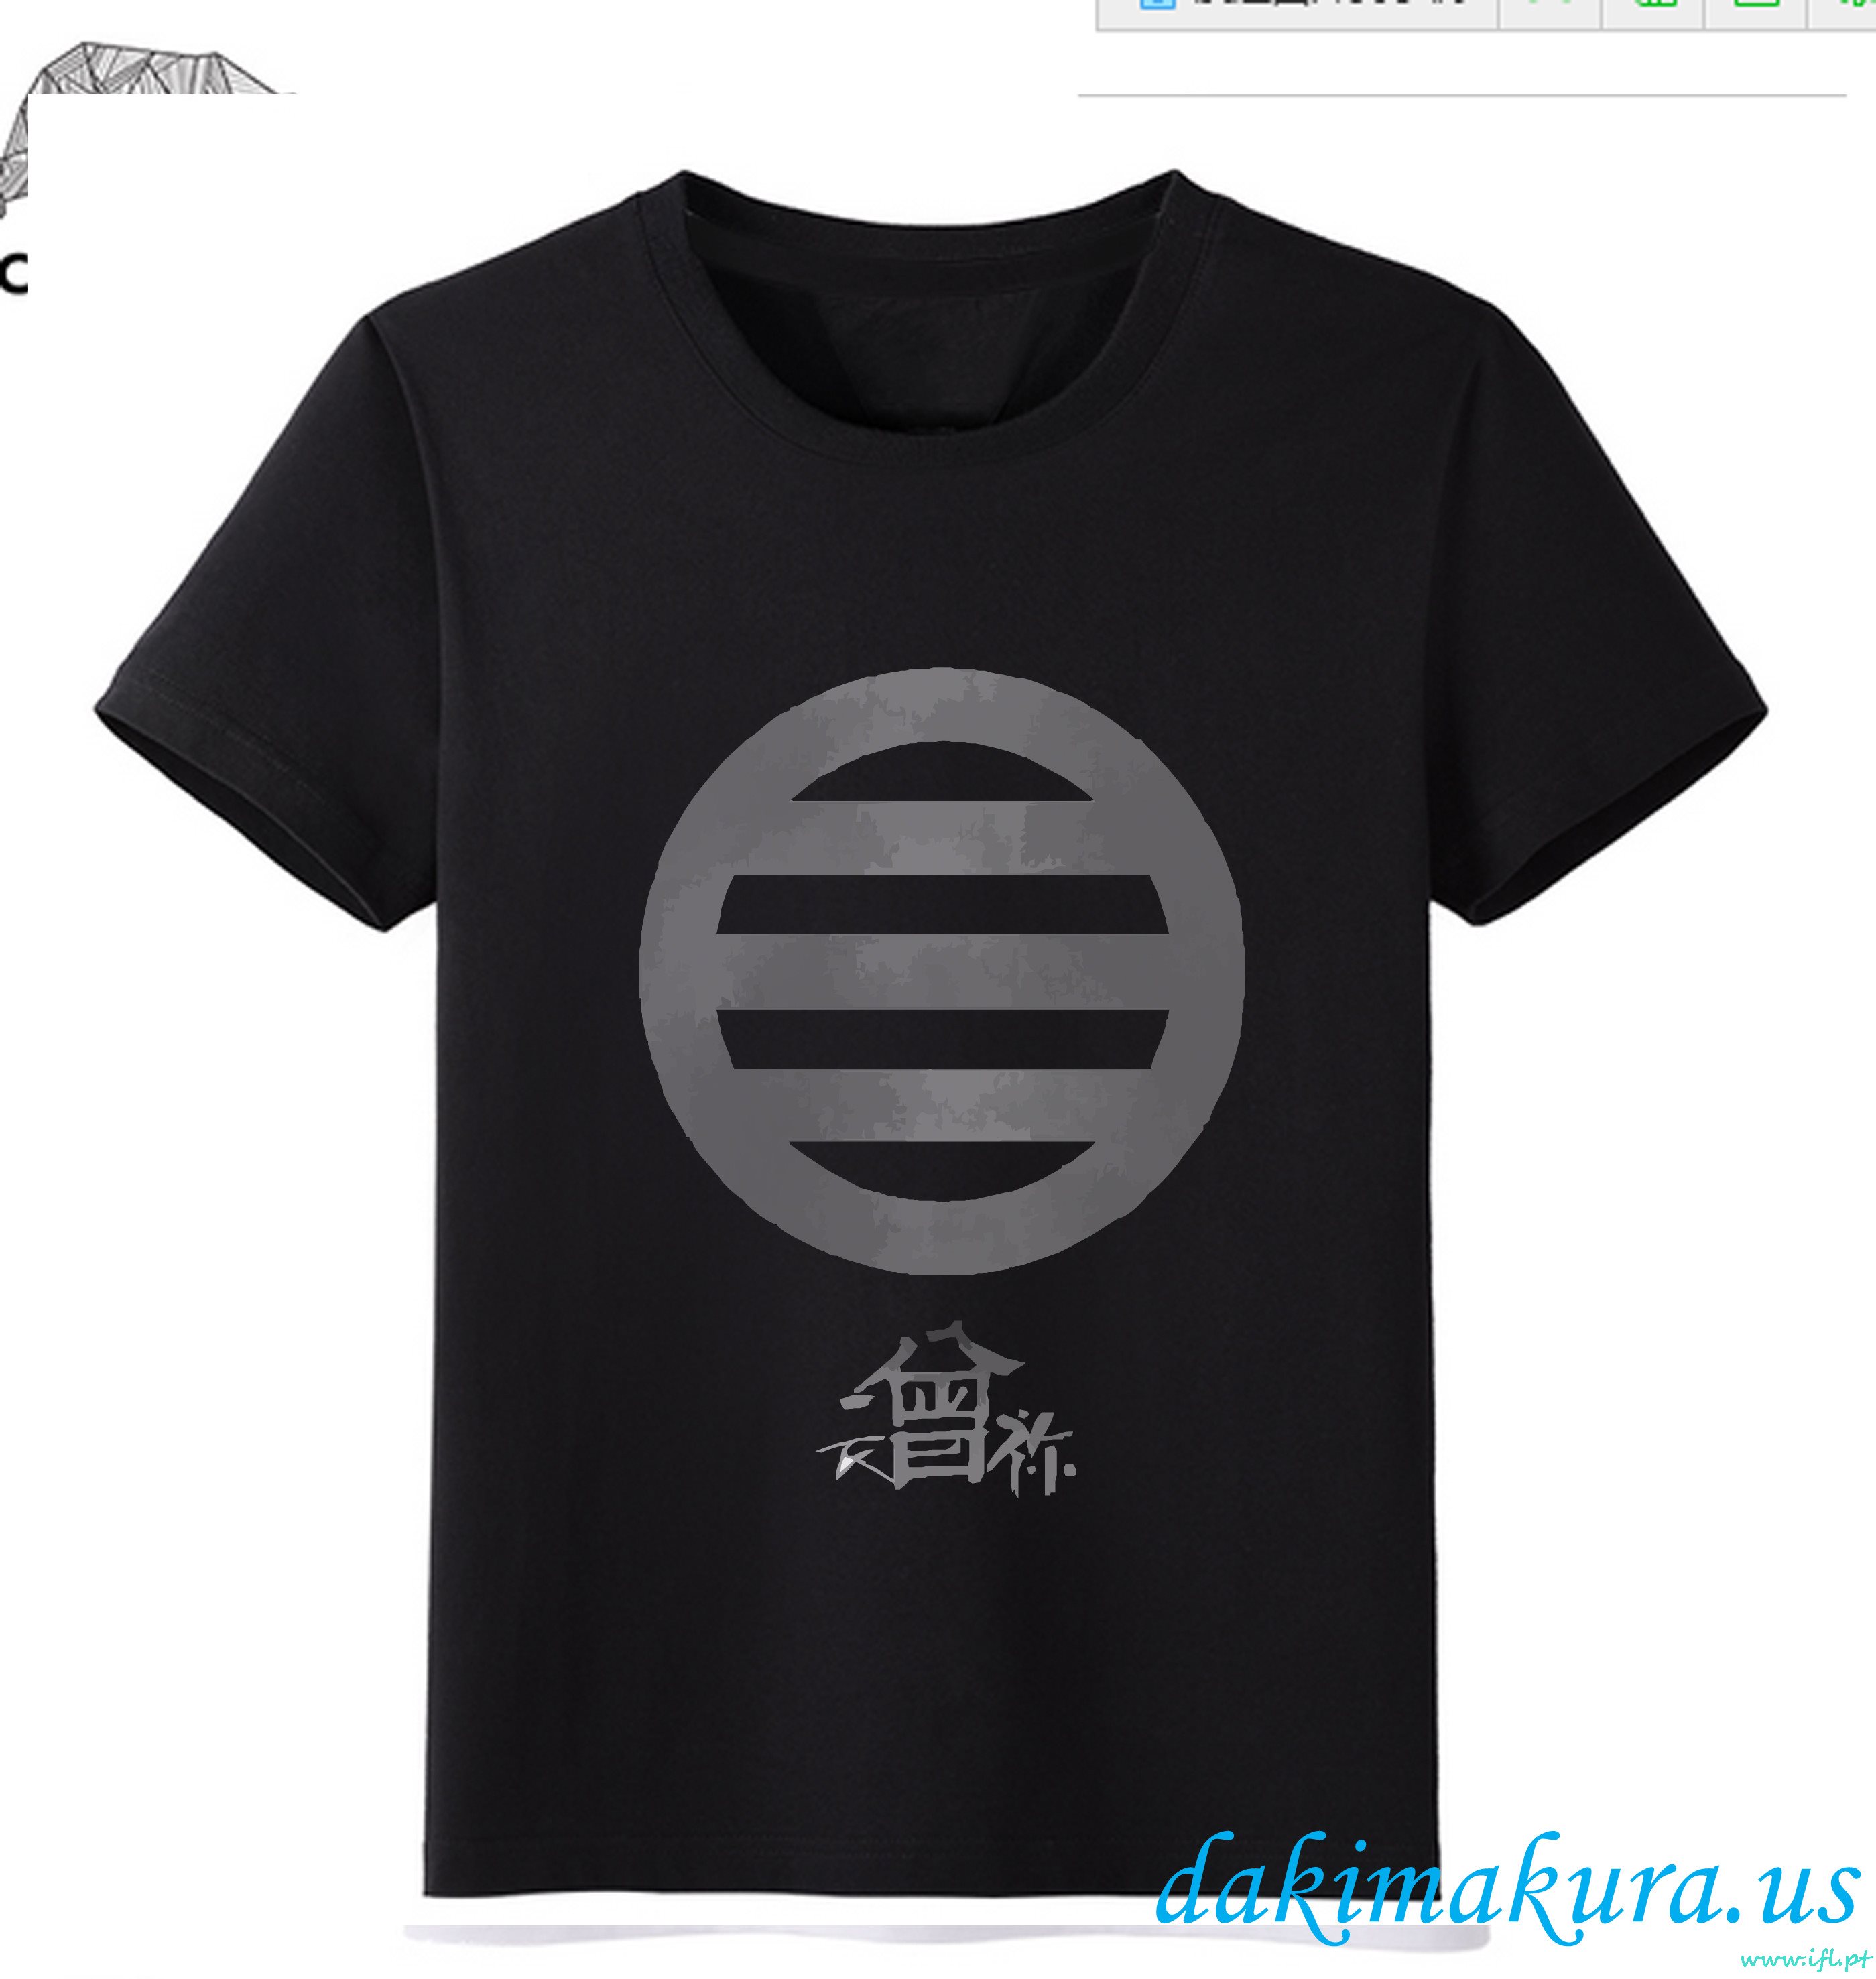 Tani Czarny - Touken Ranbu Online Mężczyzn Anime Fashion T-shirty Z Fabryki Porcelany